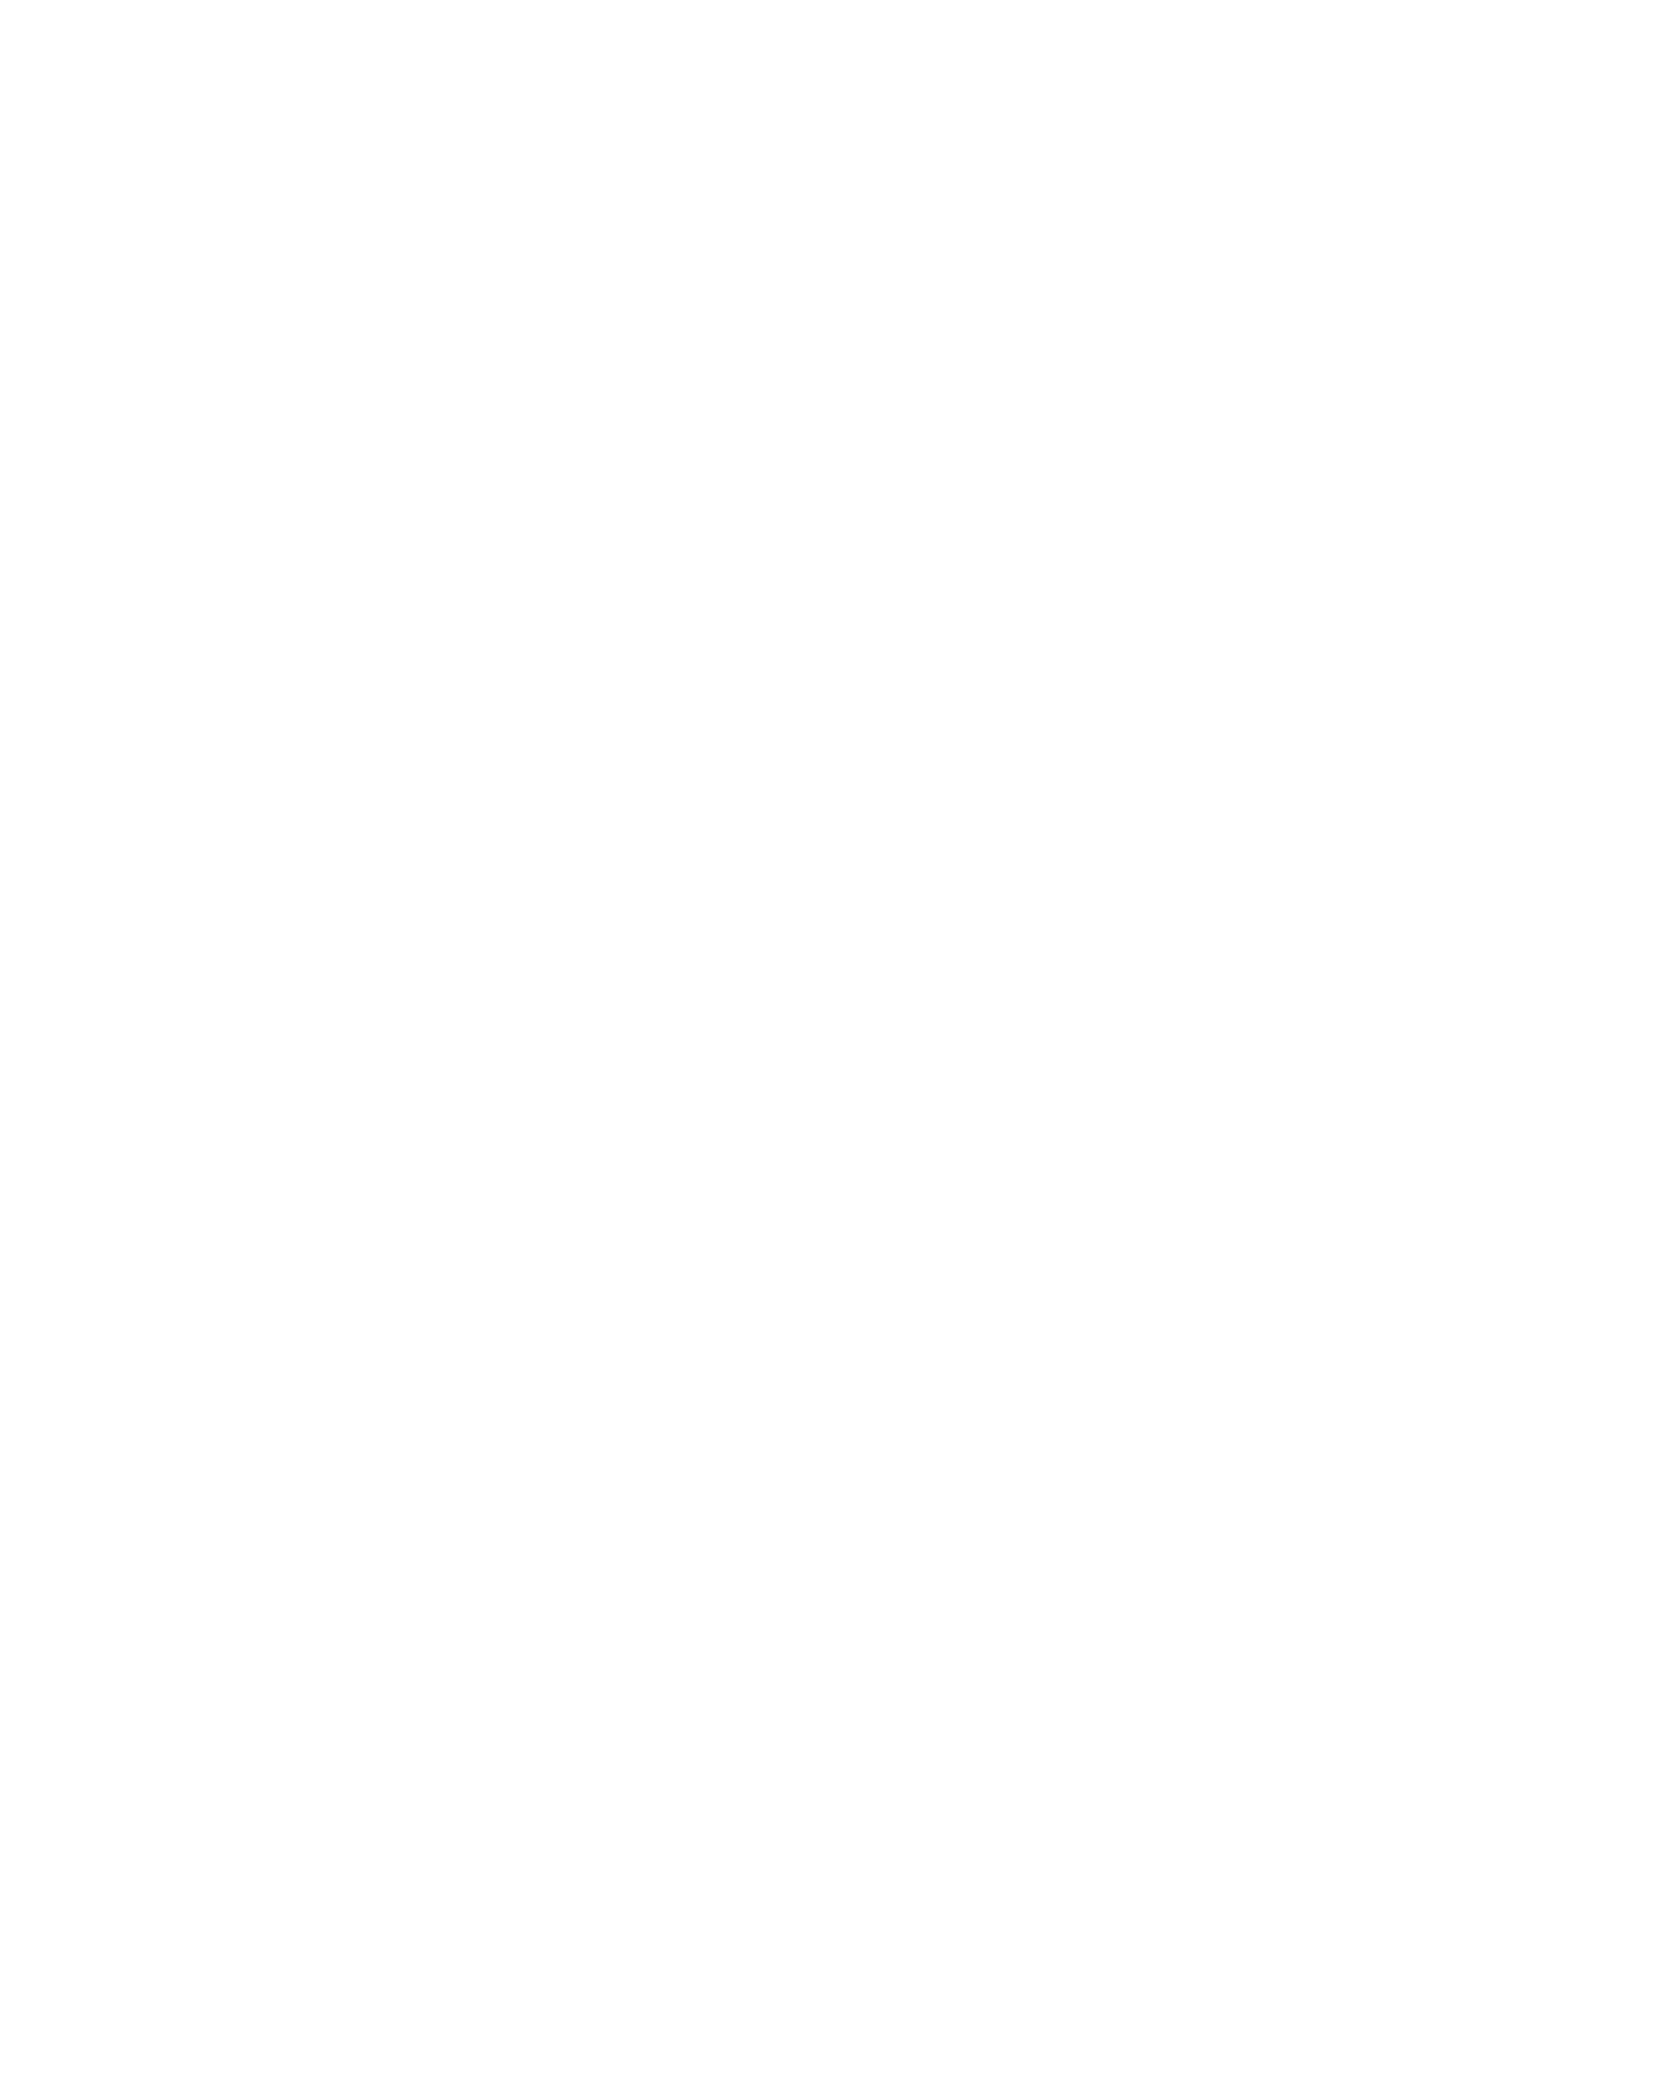 Антон Назаревич парень в очках на крыше Санкт-Петербурга Ксения Исмаил профессиональный фотограф